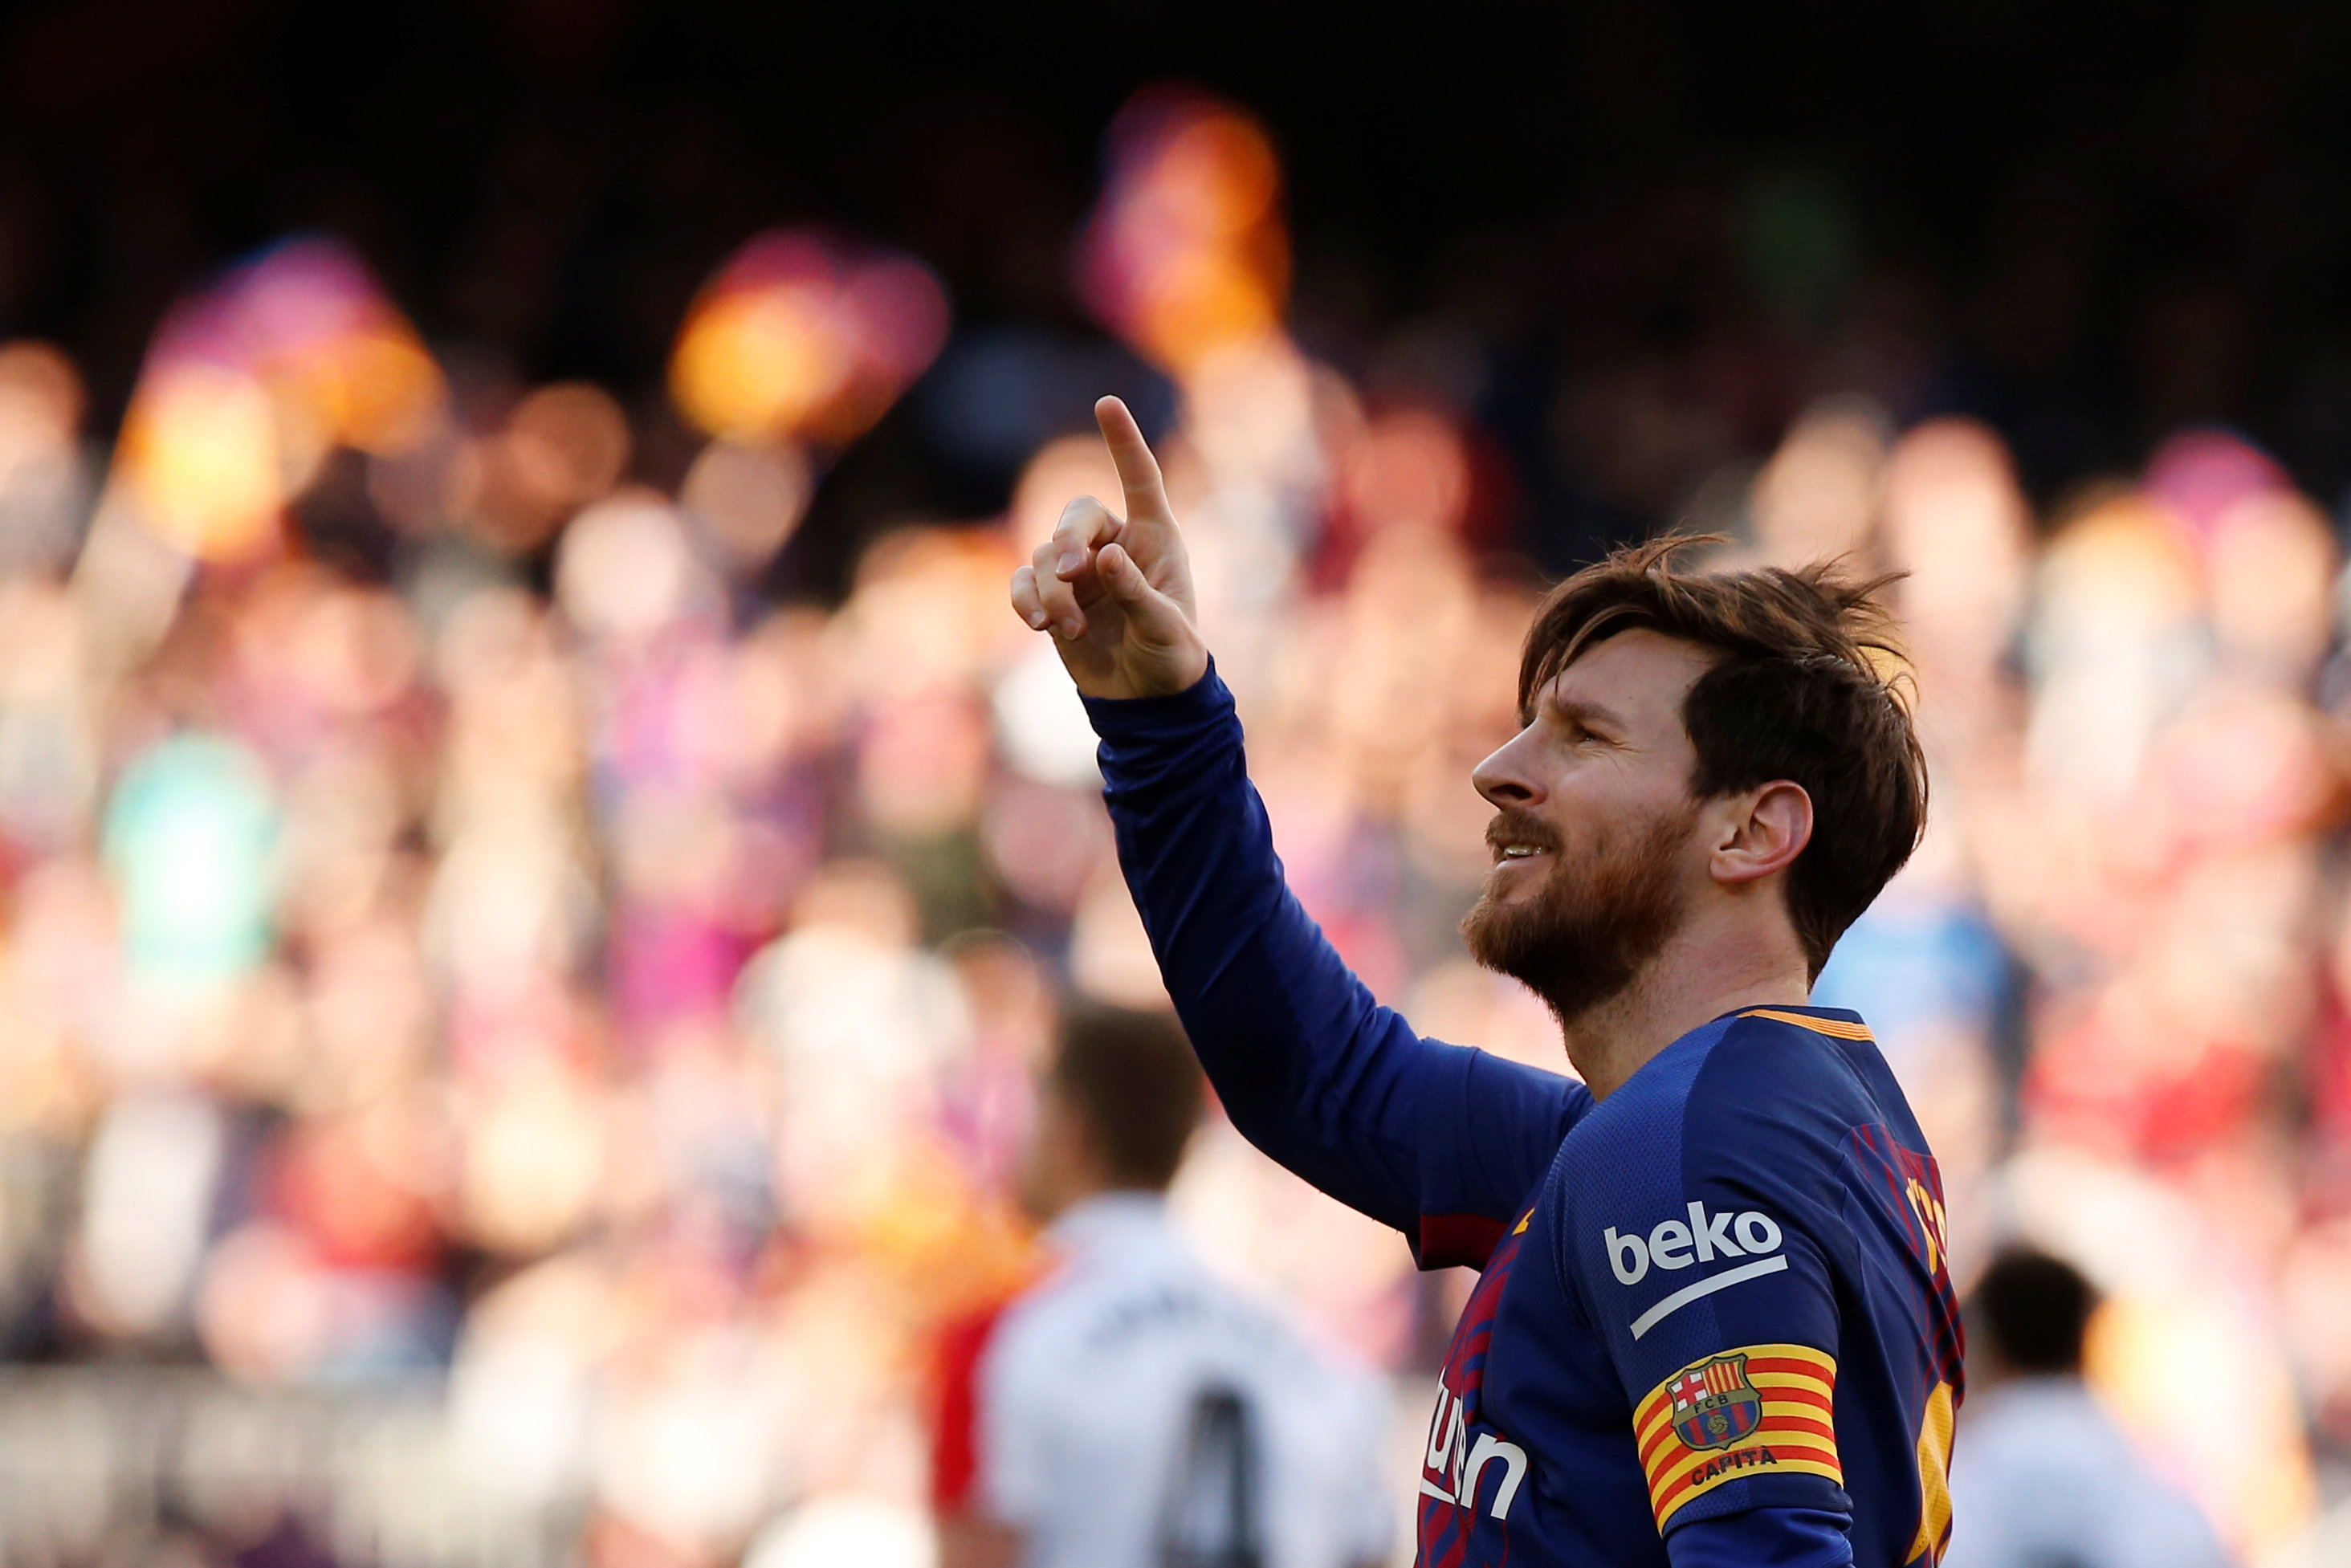 Messi Barcelona thắng Athletic Bilbao: Chứng kiến ​​Messi đạt được kỷ lục trong số các cầu thủ Barca ghi bàn trận Chung kết Cúp Nhà Vua Tây Ban Nha và giúp đội nhà giành chiến thắng. Bức hình ảnh này sẽ mang lại một cảm giác hưng phấn cho tất cả những ai yêu thích Barca và Messi.